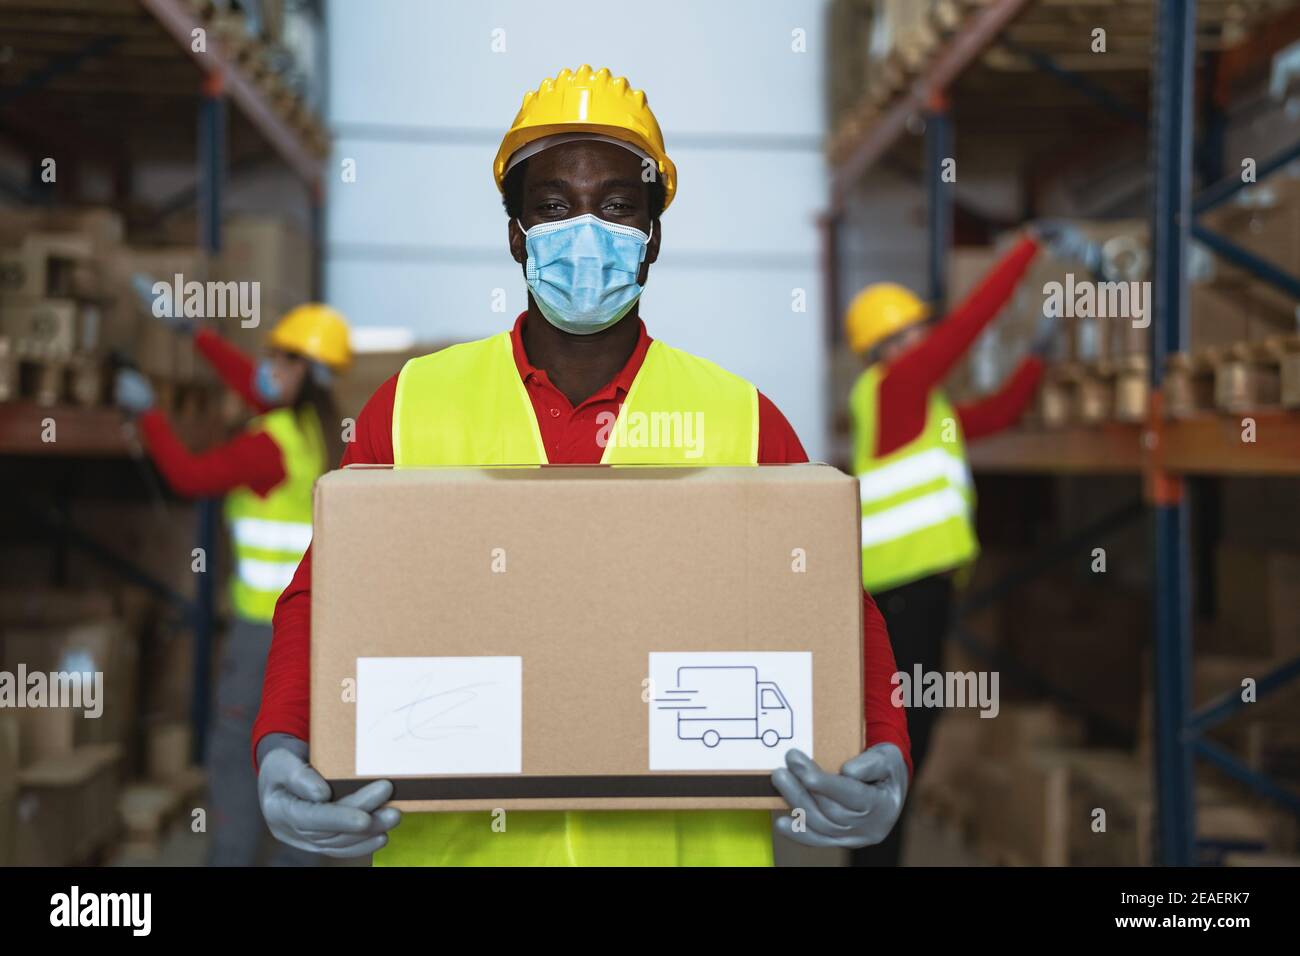 Homme noir travaillant dans l'entrepôt en chargeant les boîtes de livraison pendant le port Masque chirurgical de visage pendant la pandémie du virus corona - Logistic et concept de l'industrie Banque D'Images